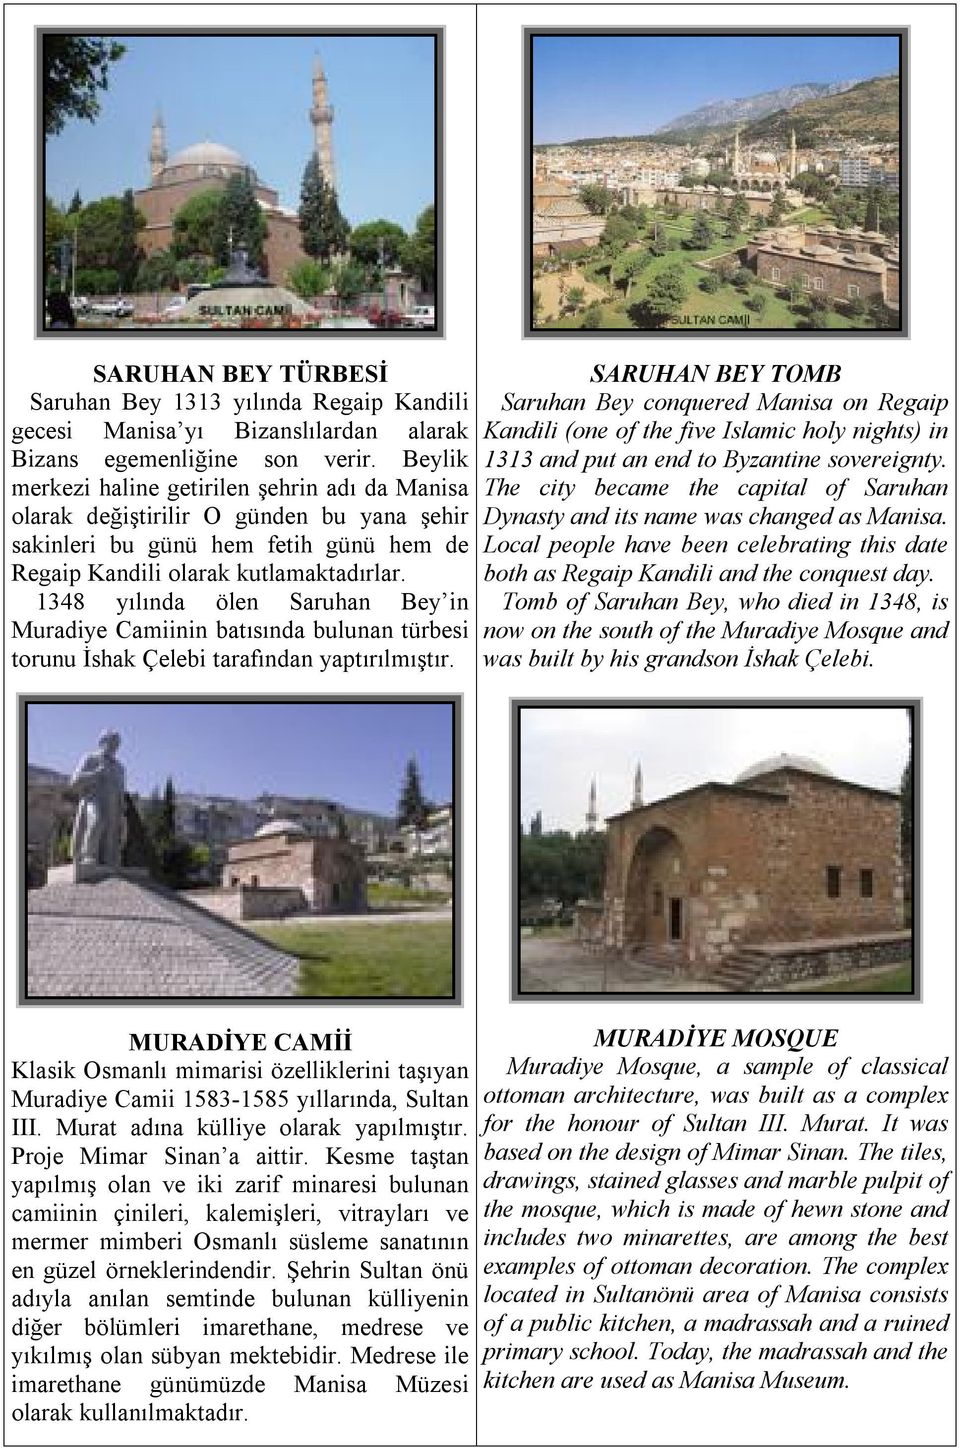 1348 yılında ölen Saruhan Bey in Muradiye Camiinin batısında bulunan türbesi torunu İshak Çelebi tarafından yaptırılmıştır.